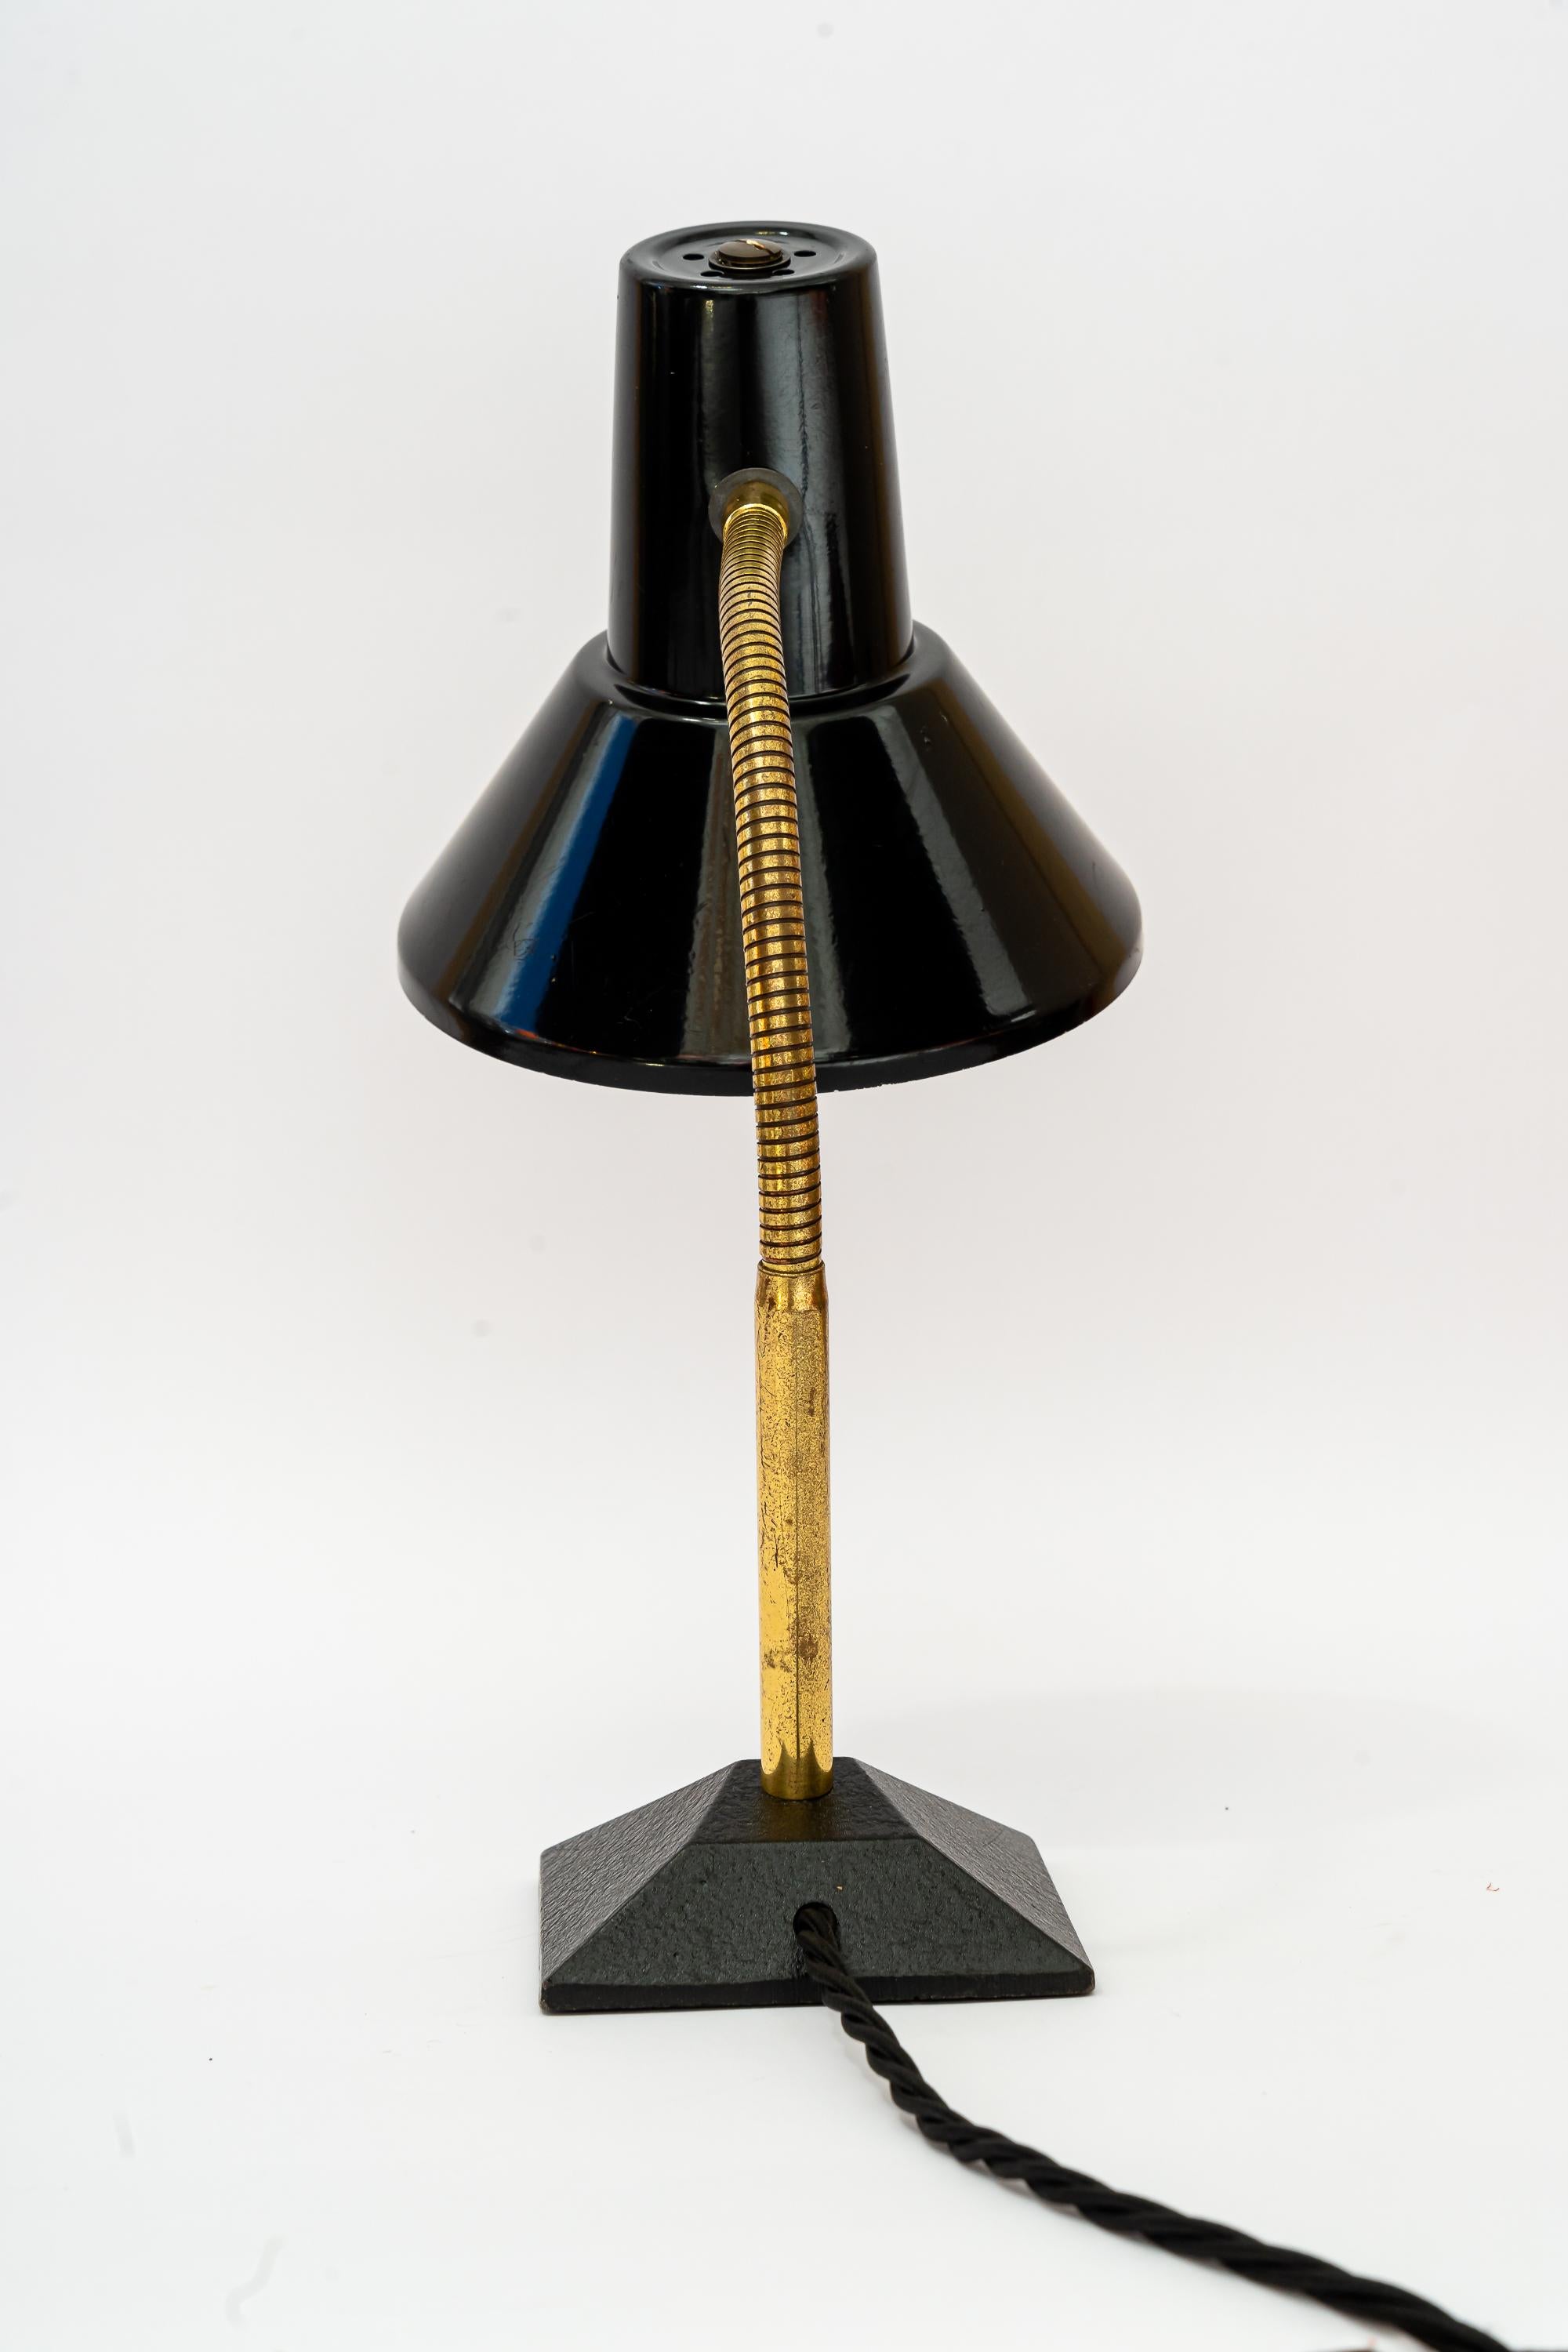 Lampe de table vintage réglable viennoise des années 1960
Etat original